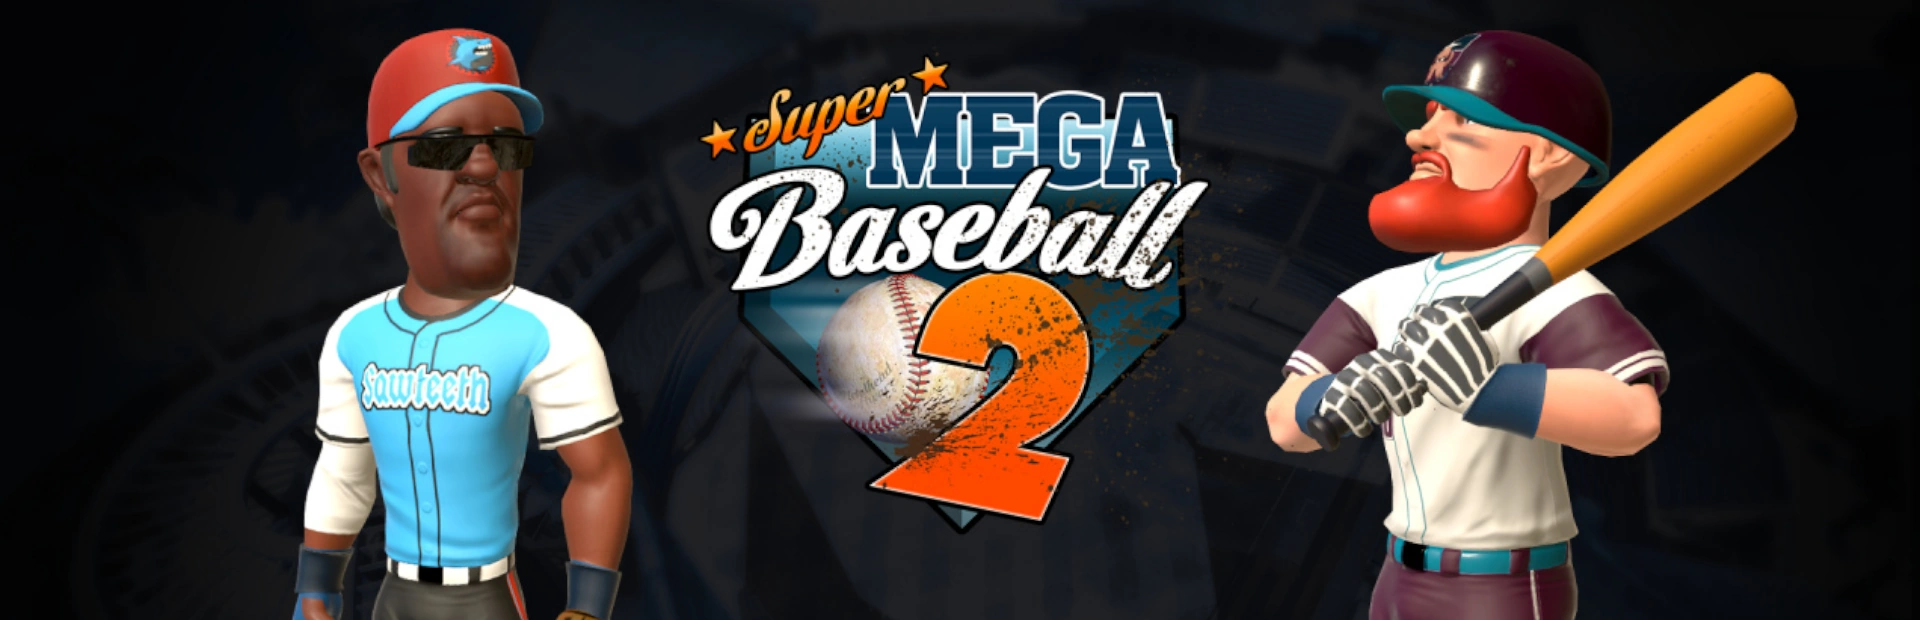 دانلود بازی Super Mega Baseball 2 برای کامپیوتر | گیمباتو